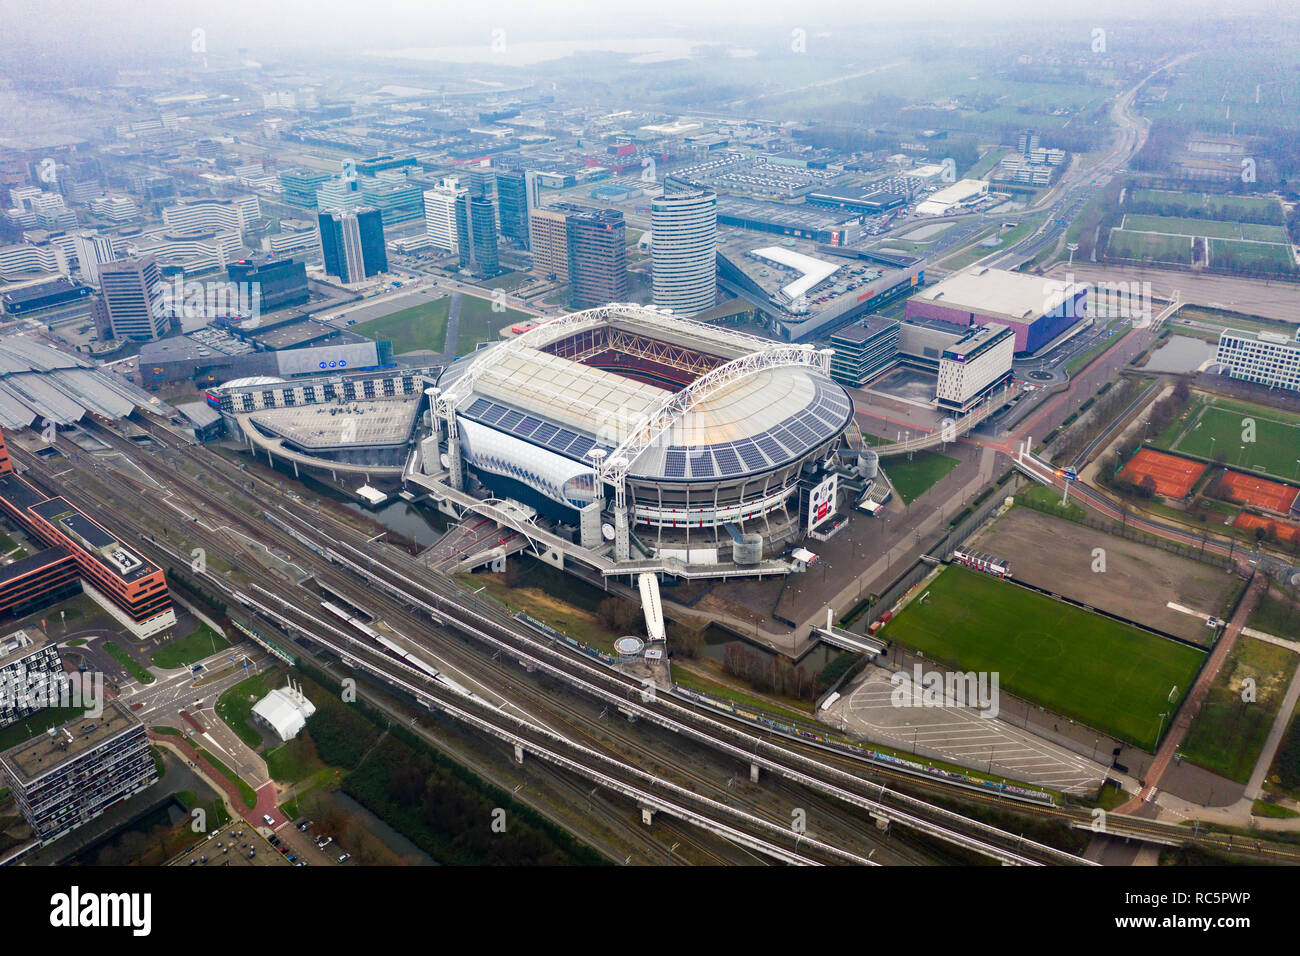 Januar 7, 2019, Amsterdam, Niederlande: Antenne Johan Cruyff Arena ist das Hauptstadion der AFC Ajax Fußball Club und der niederländischen Nationalmannschaft Stockfoto